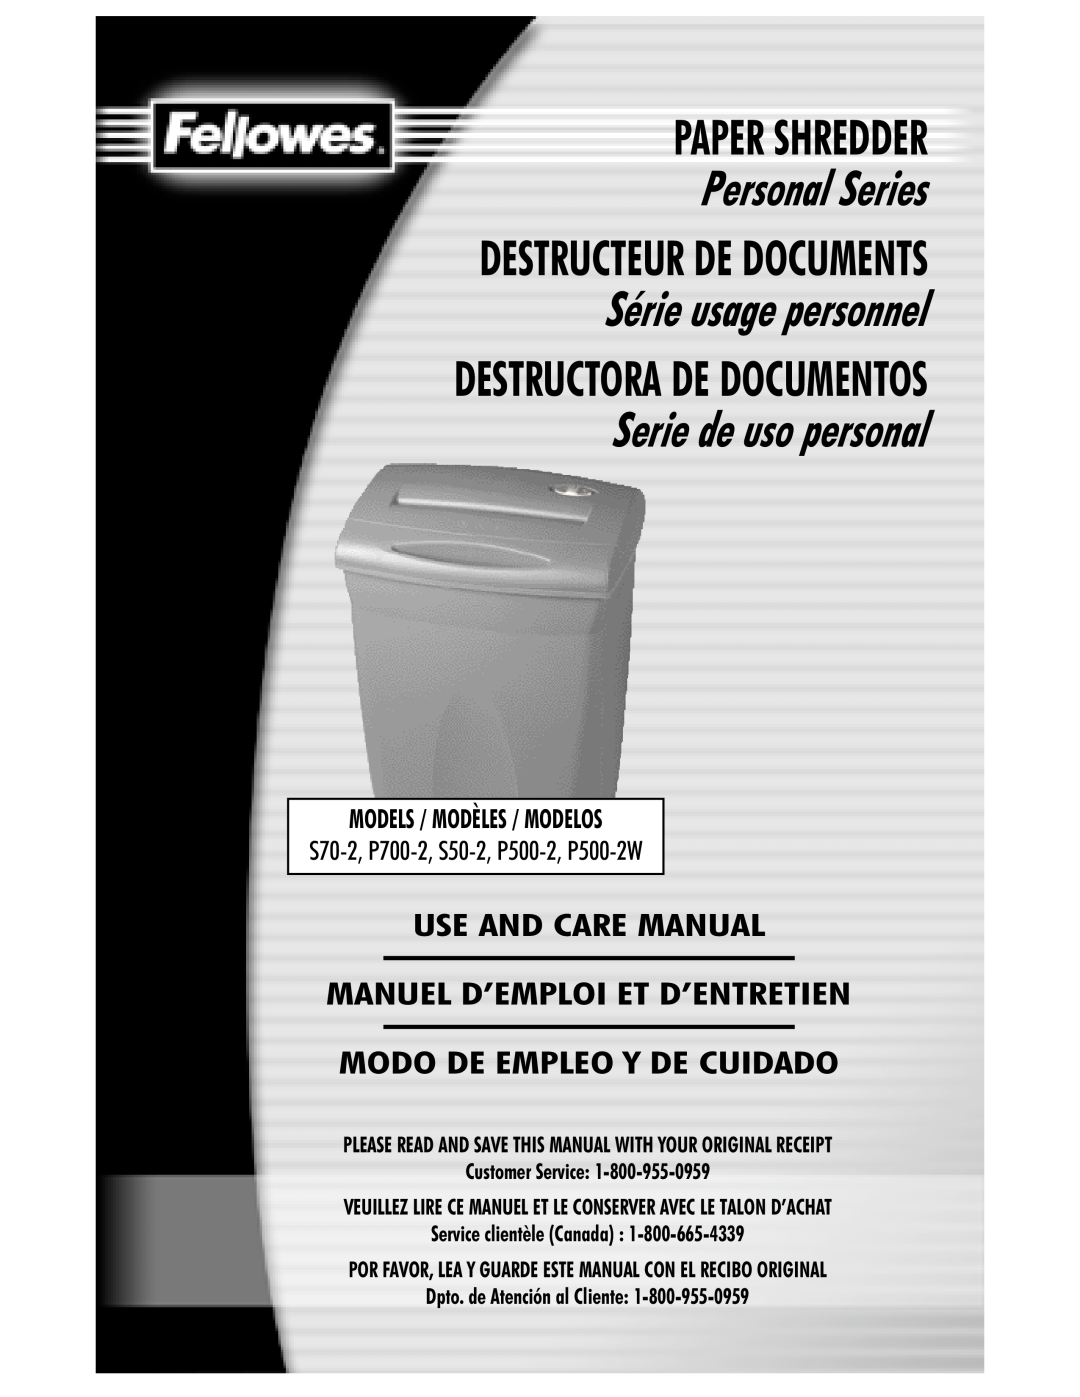 Fellowes P500-2W manual Paper Shredder, Personal Series, Destructeur De Documents, Série usage personnel, Customer Service 